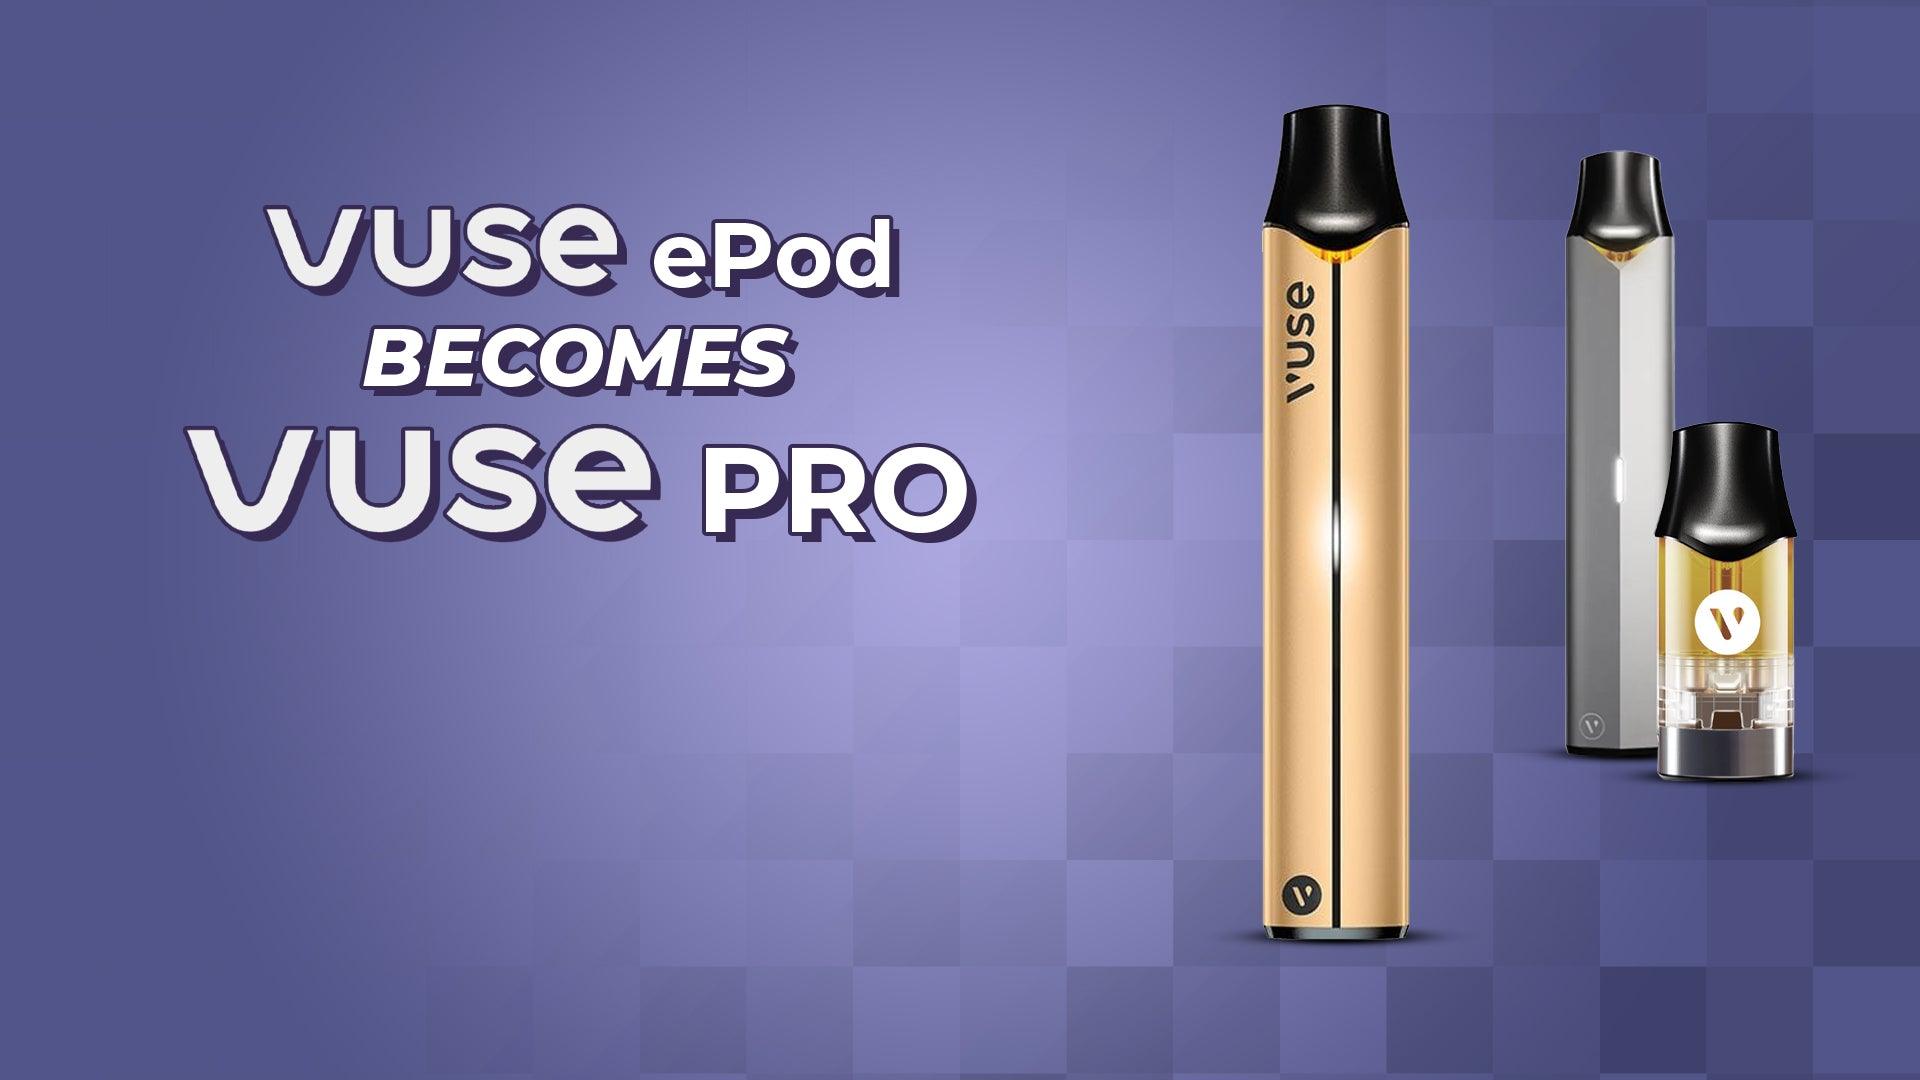 Vuse ePod Becomes Vuse PRO - Brand:Vuse, Category:Pods & Cartridges, Category:Vape Kits, Sub Category:Pod Kits, Sub Category:Prefilled Pods, Sub Category:Starter Kits